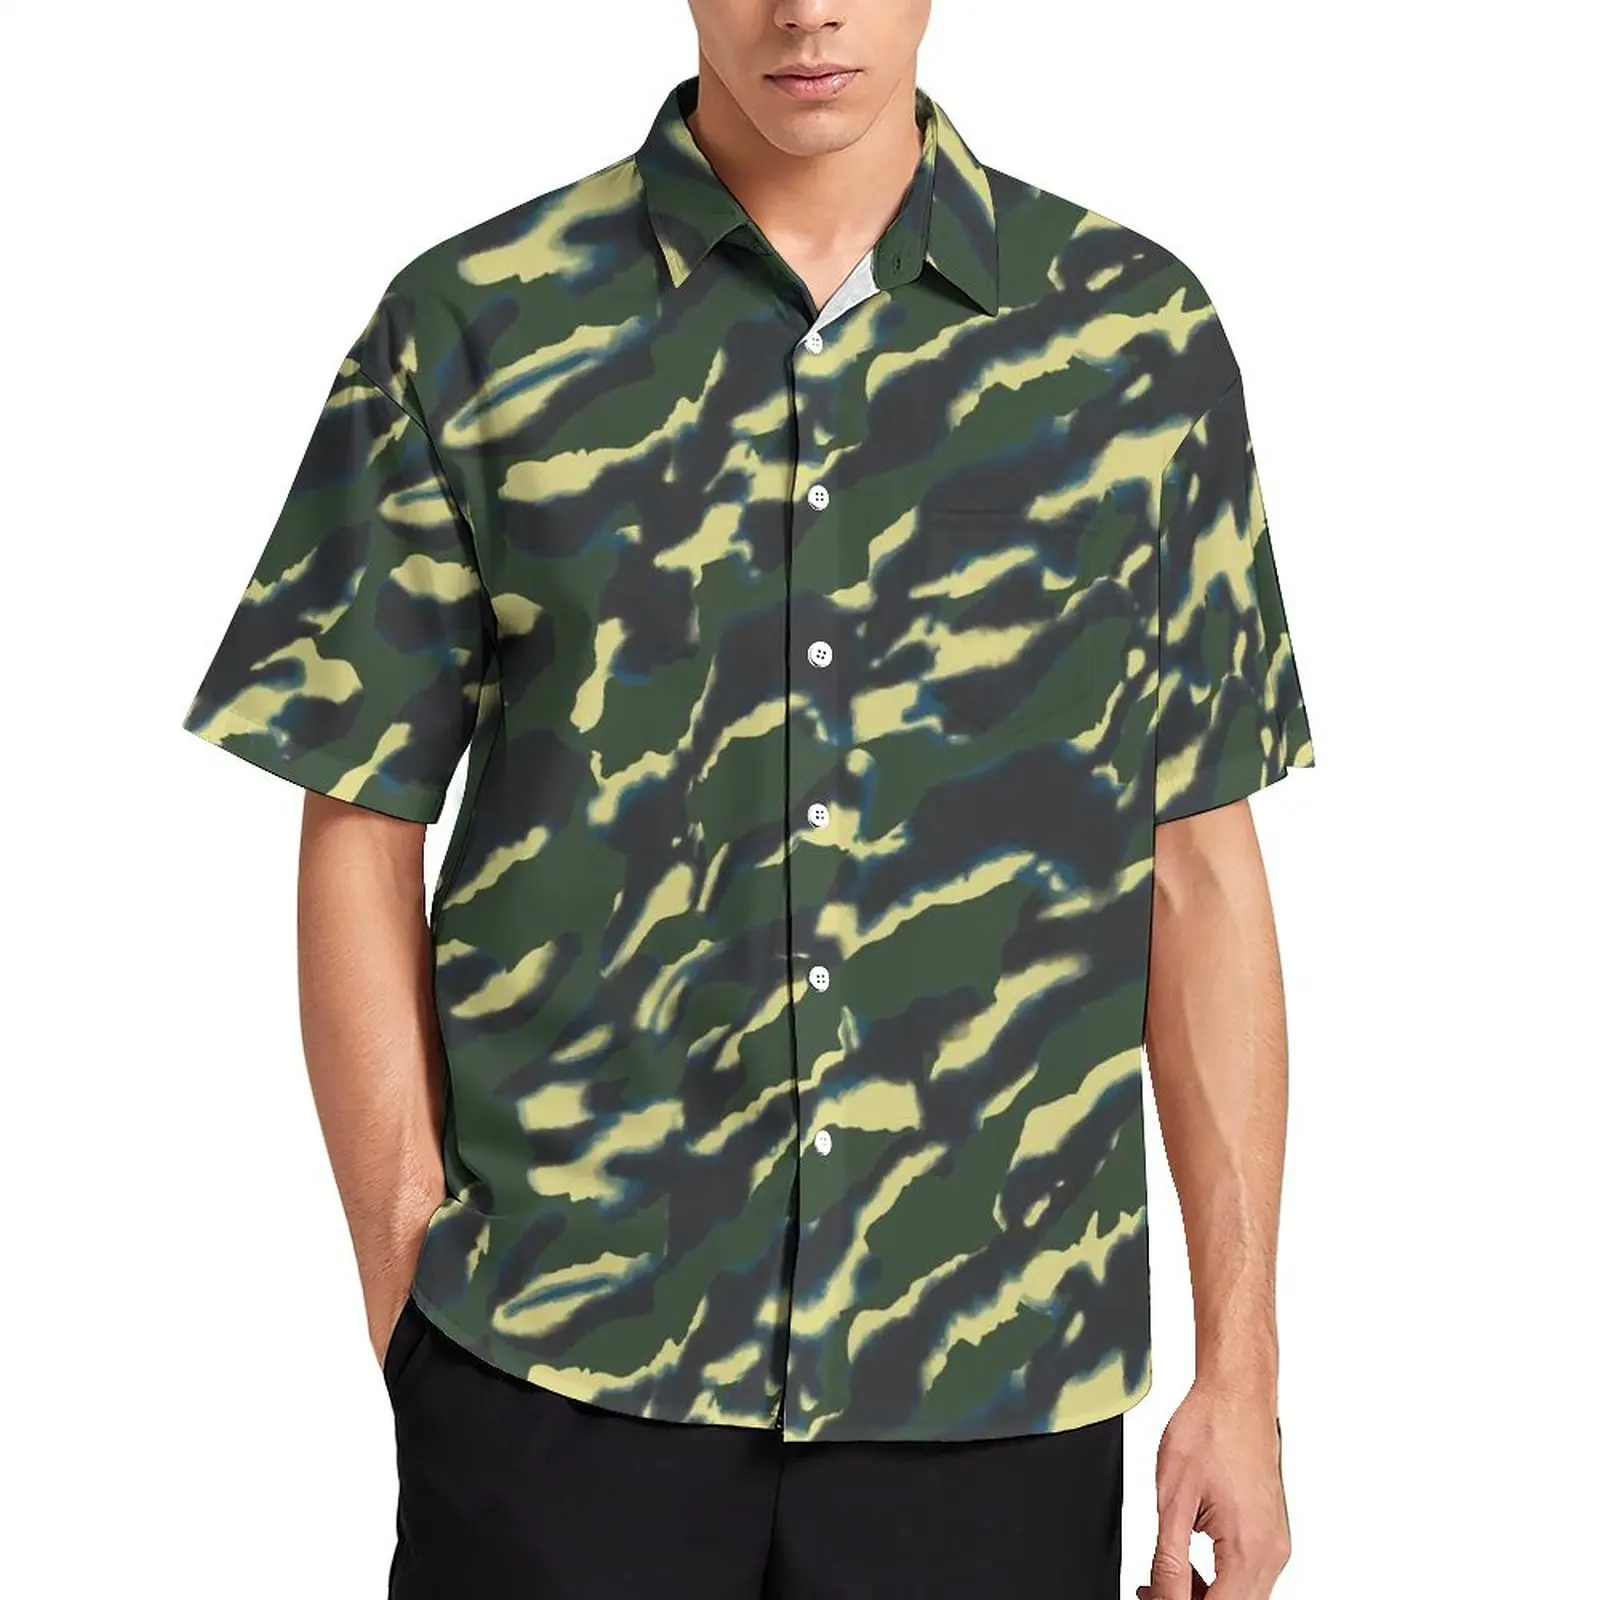 

Зеленая камуфляжная рубашка для отпуска, мужские камуфляжные повседневные рубашки с принтом, гавайская дизайнерская уличная одежда с коро...